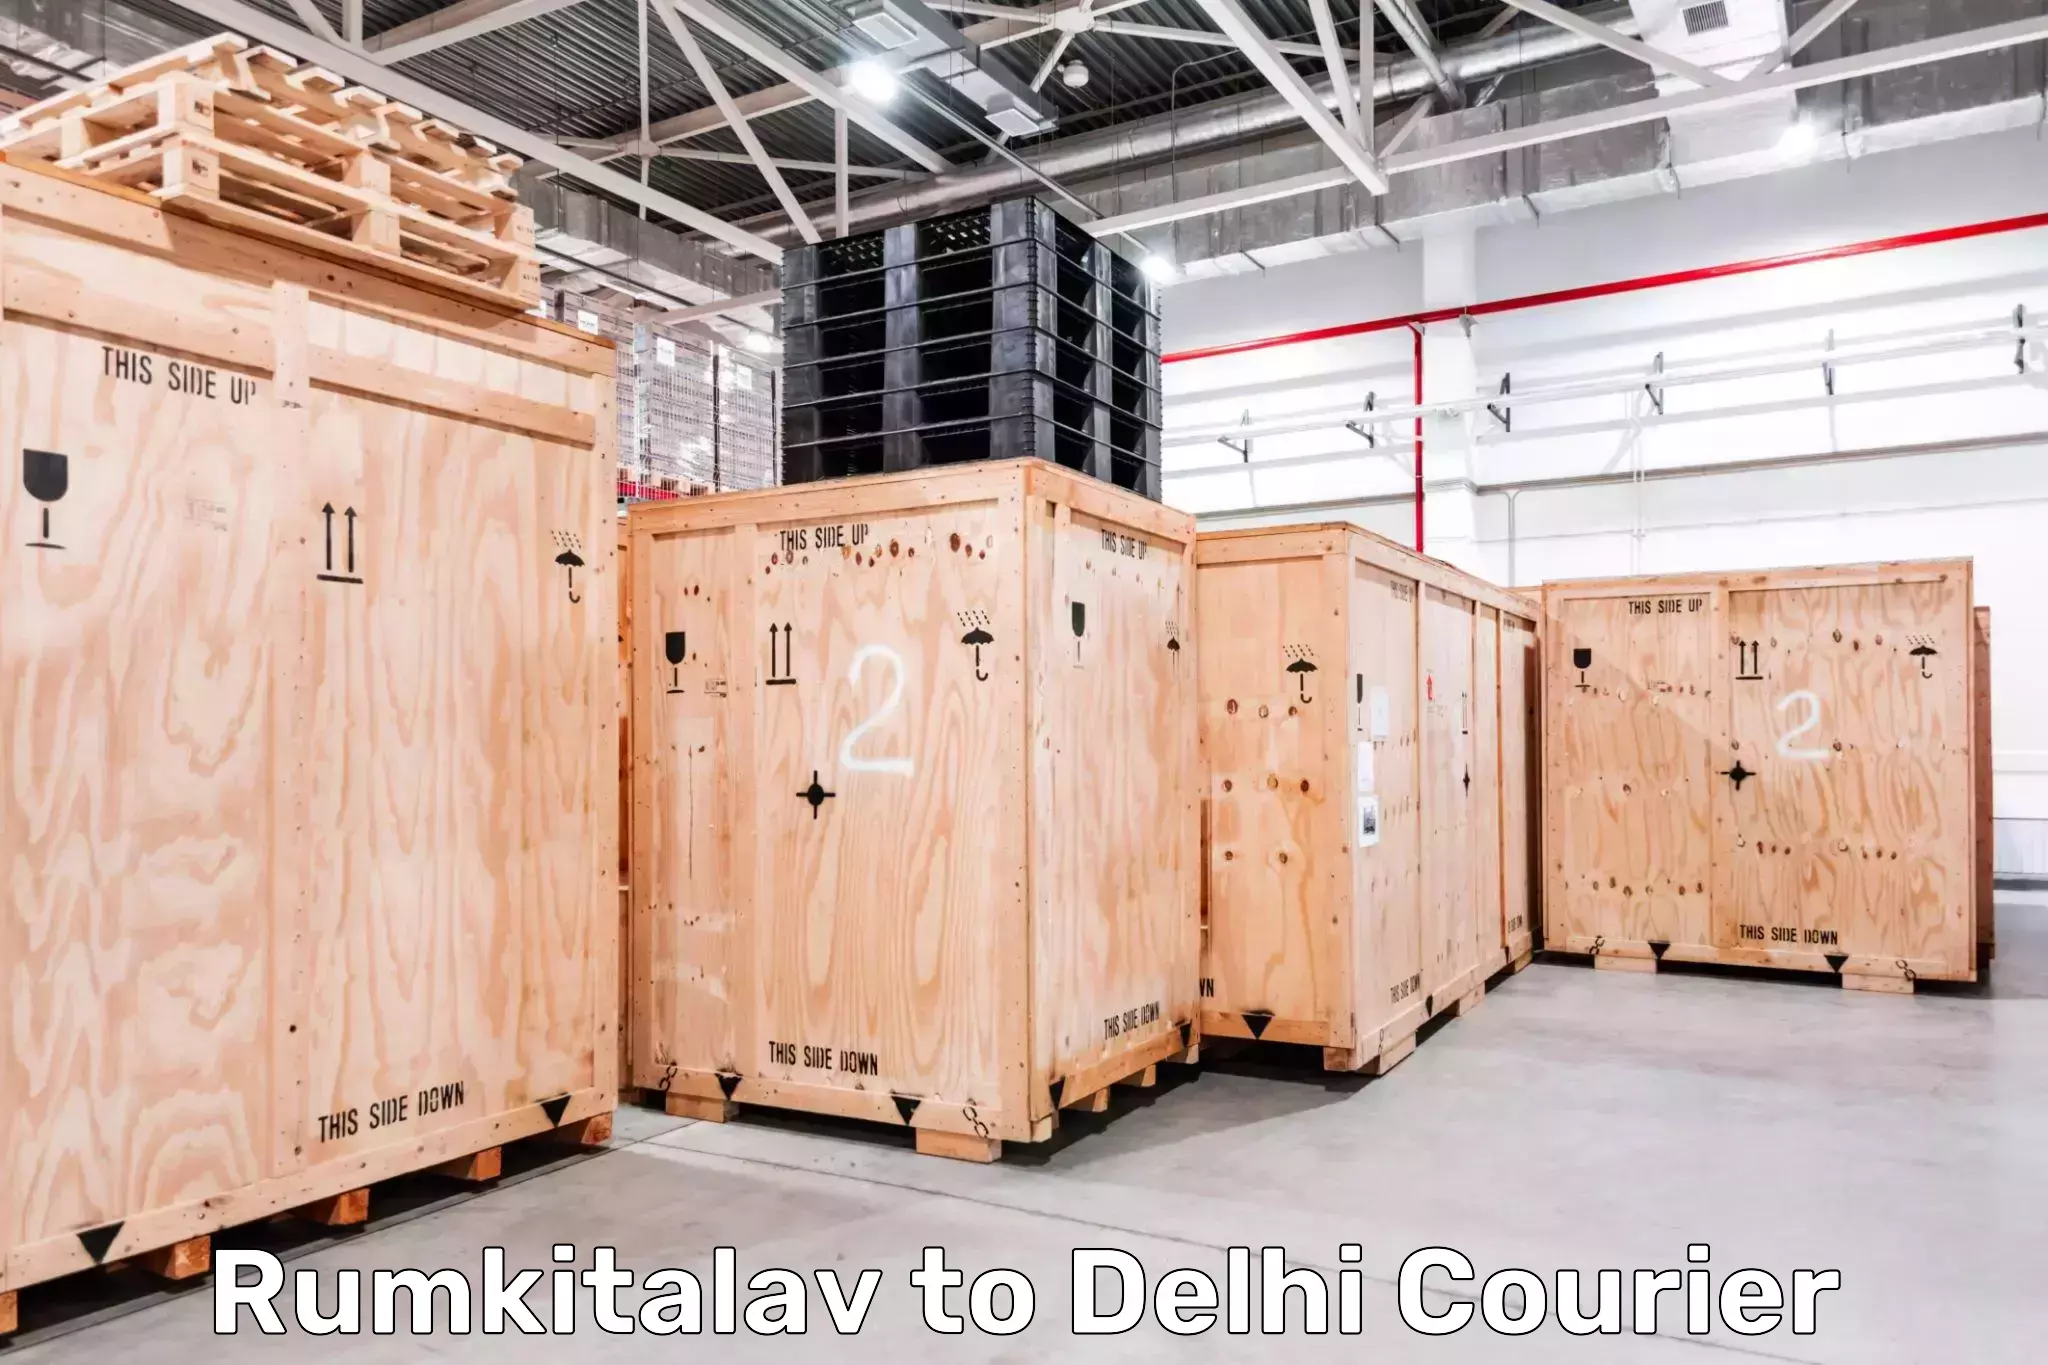 Expedited parcel delivery Rumkitalav to Kalkaji